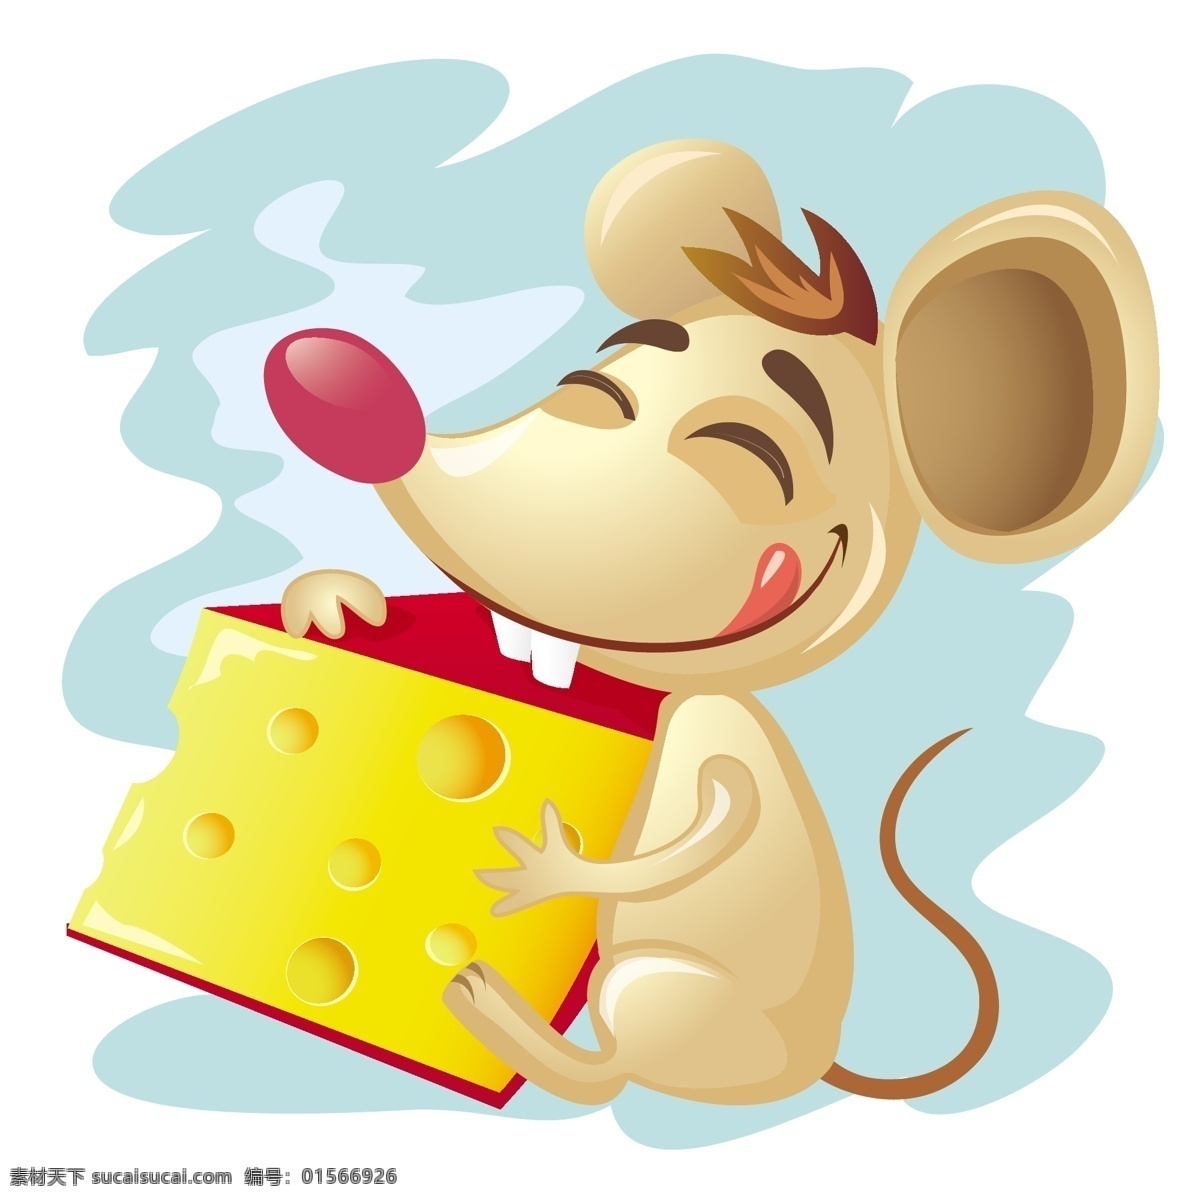 奶酪 卡通 小 老鼠 可爱 表情 创意 矢量 高清图片